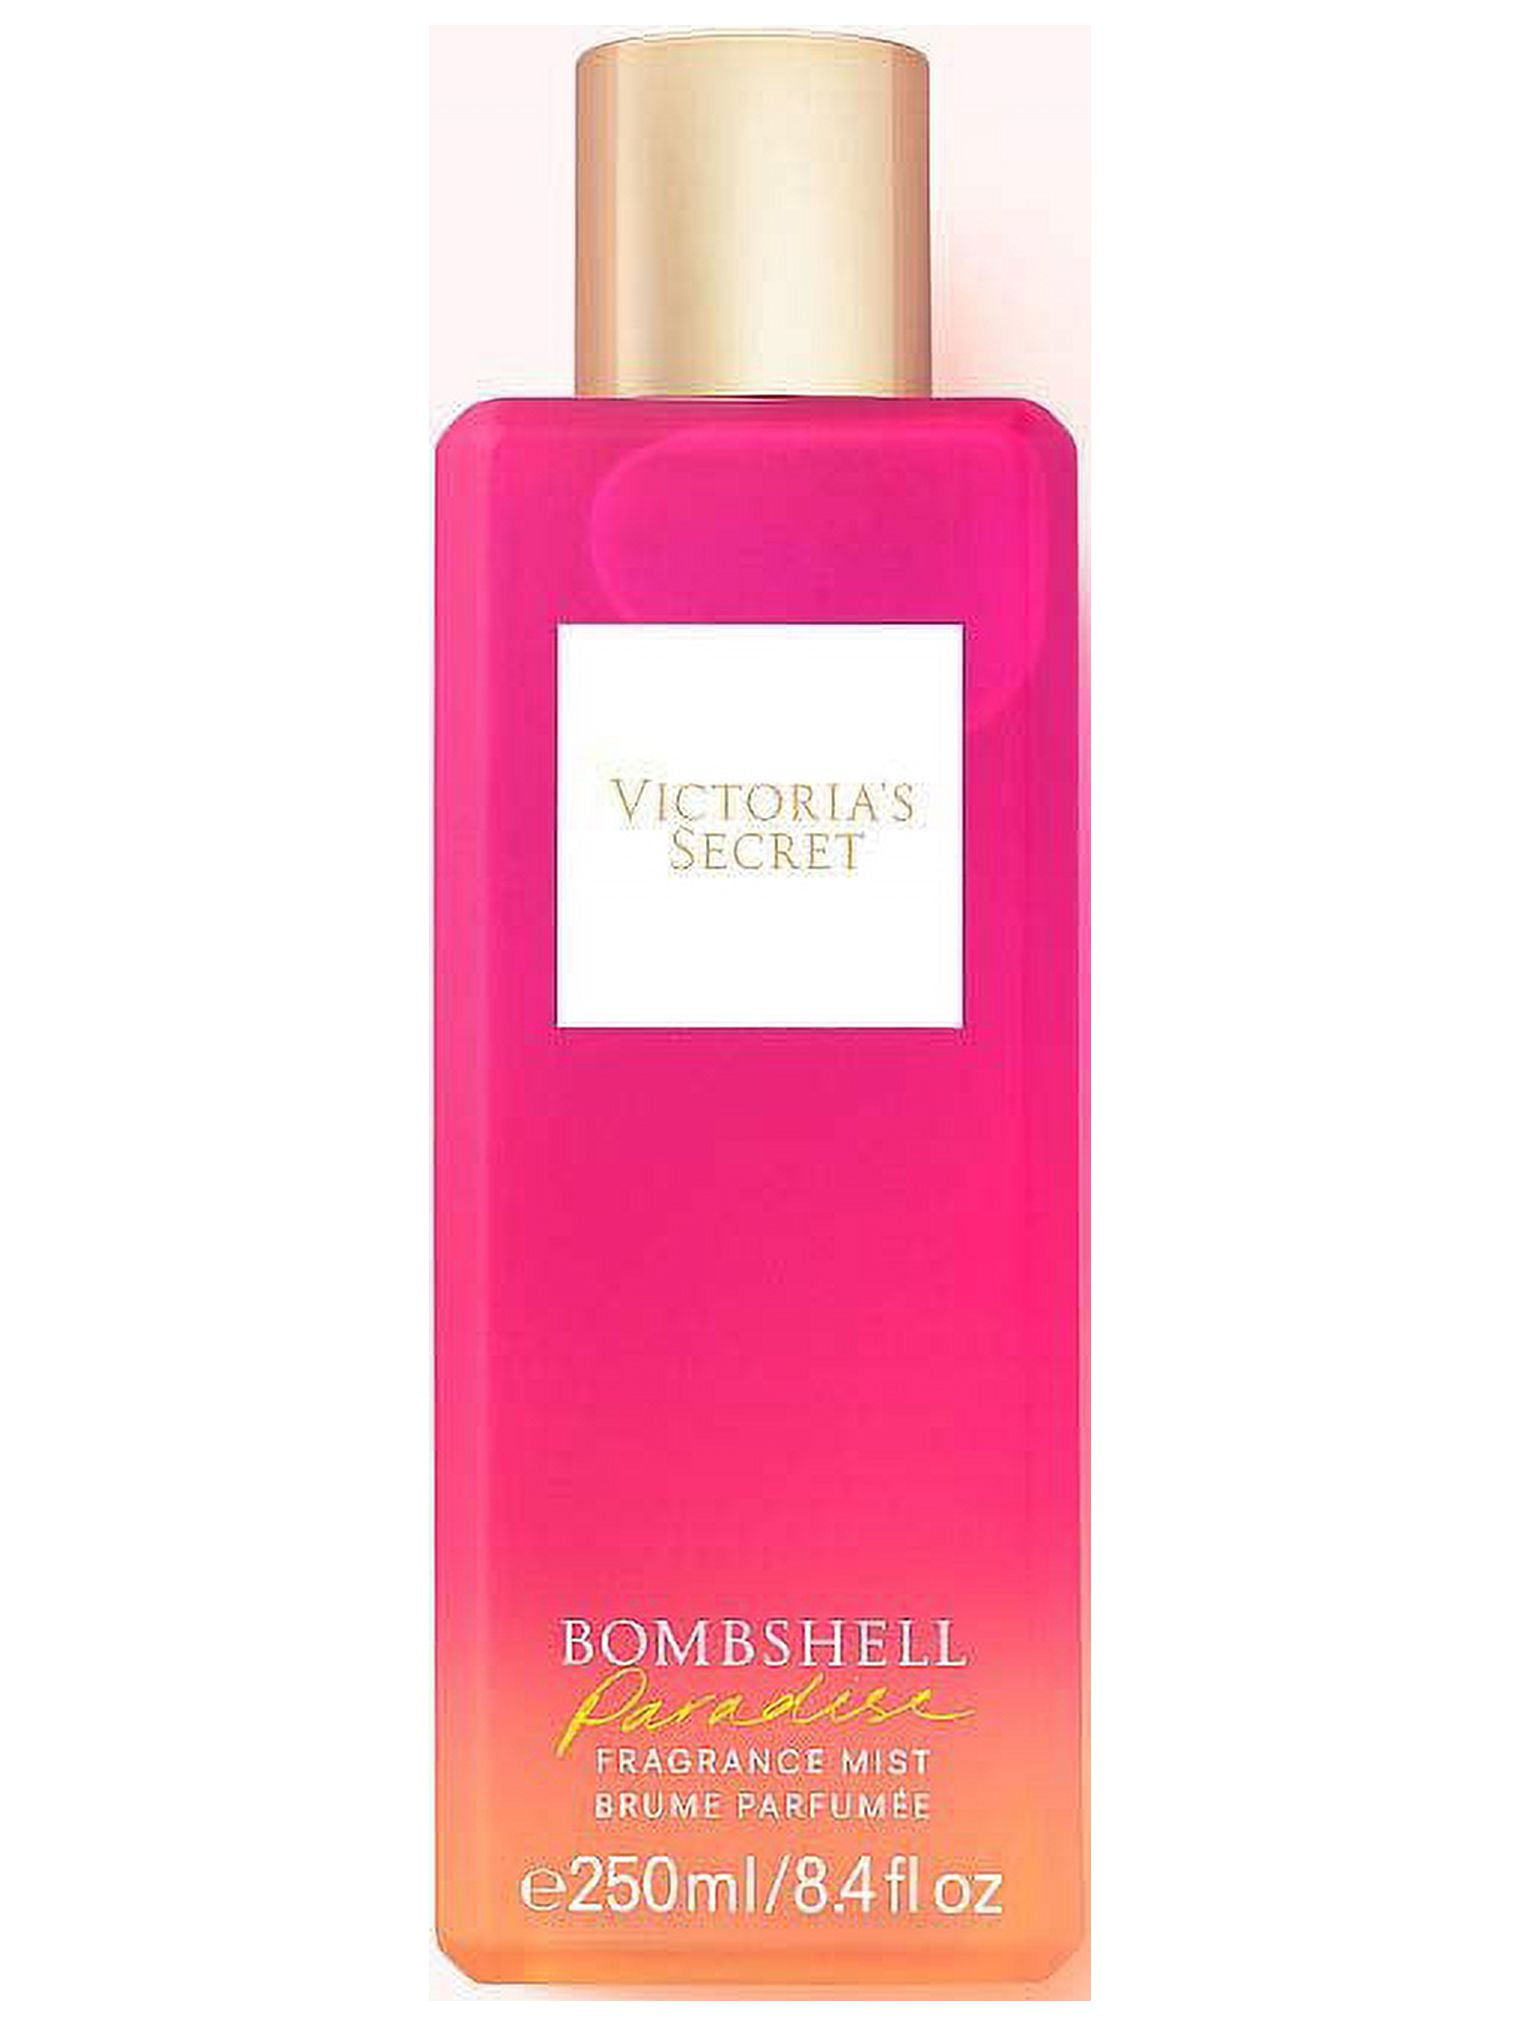 Buy Victoria's Secret Bombshell, 8.4 onzas at Ubuy Lebanon